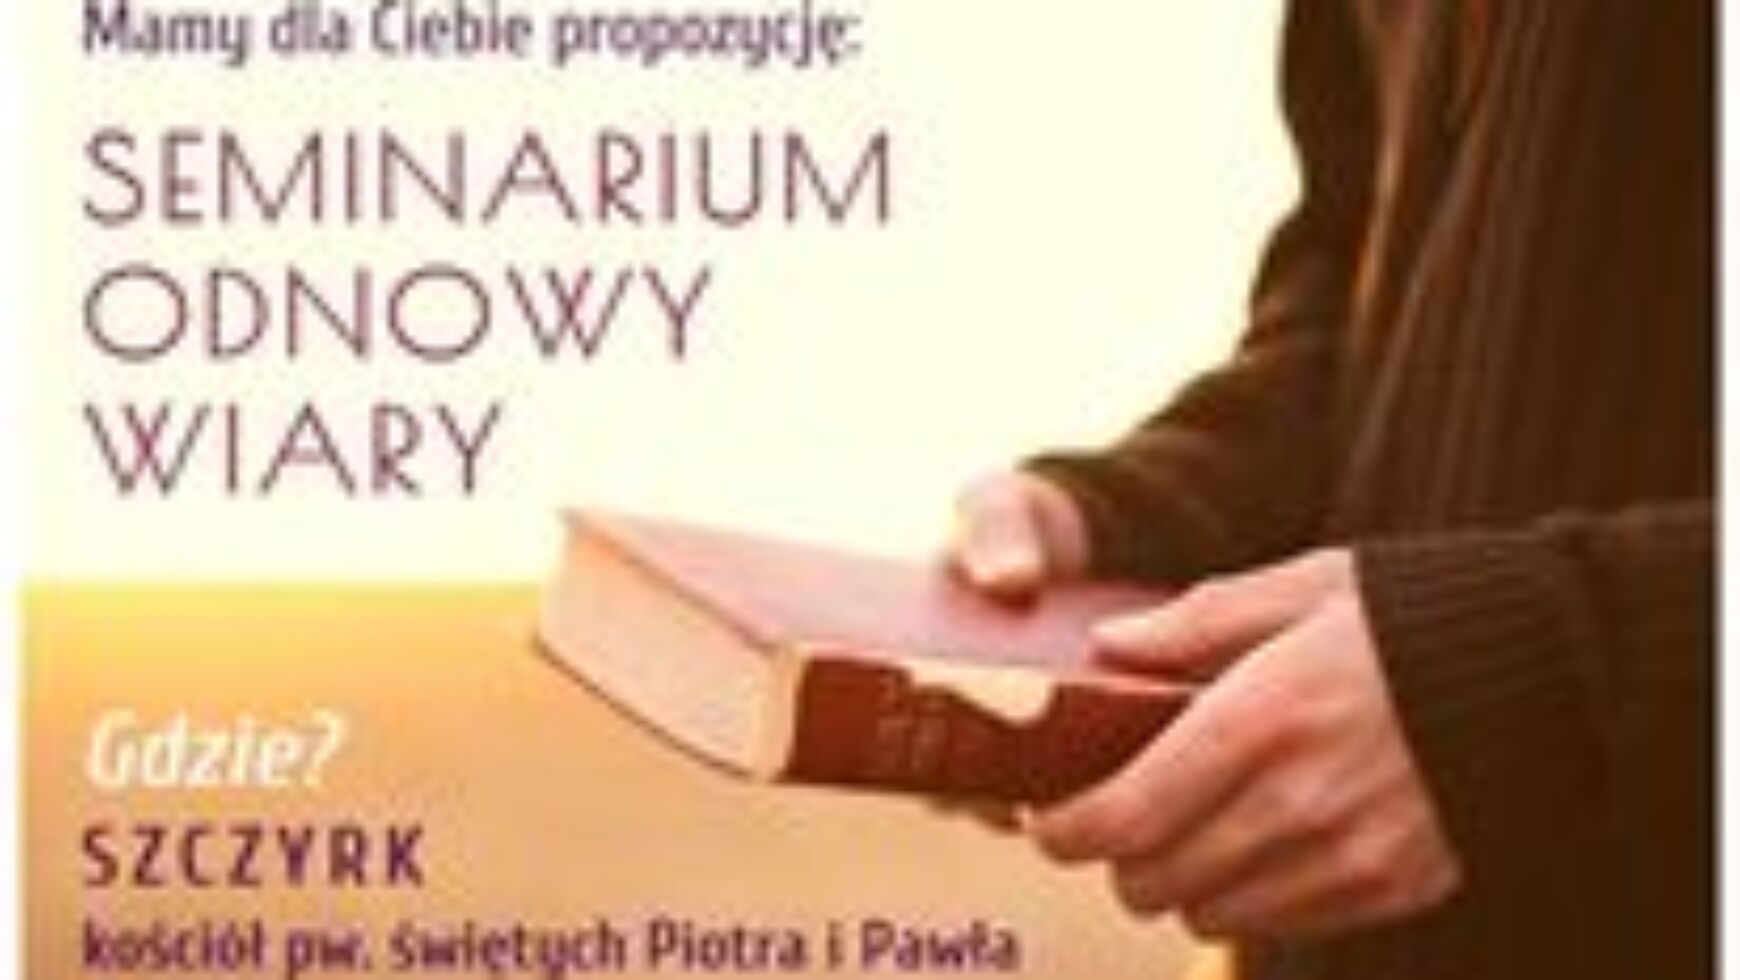 Seminarium Odnowy Wiary, Szczyrk